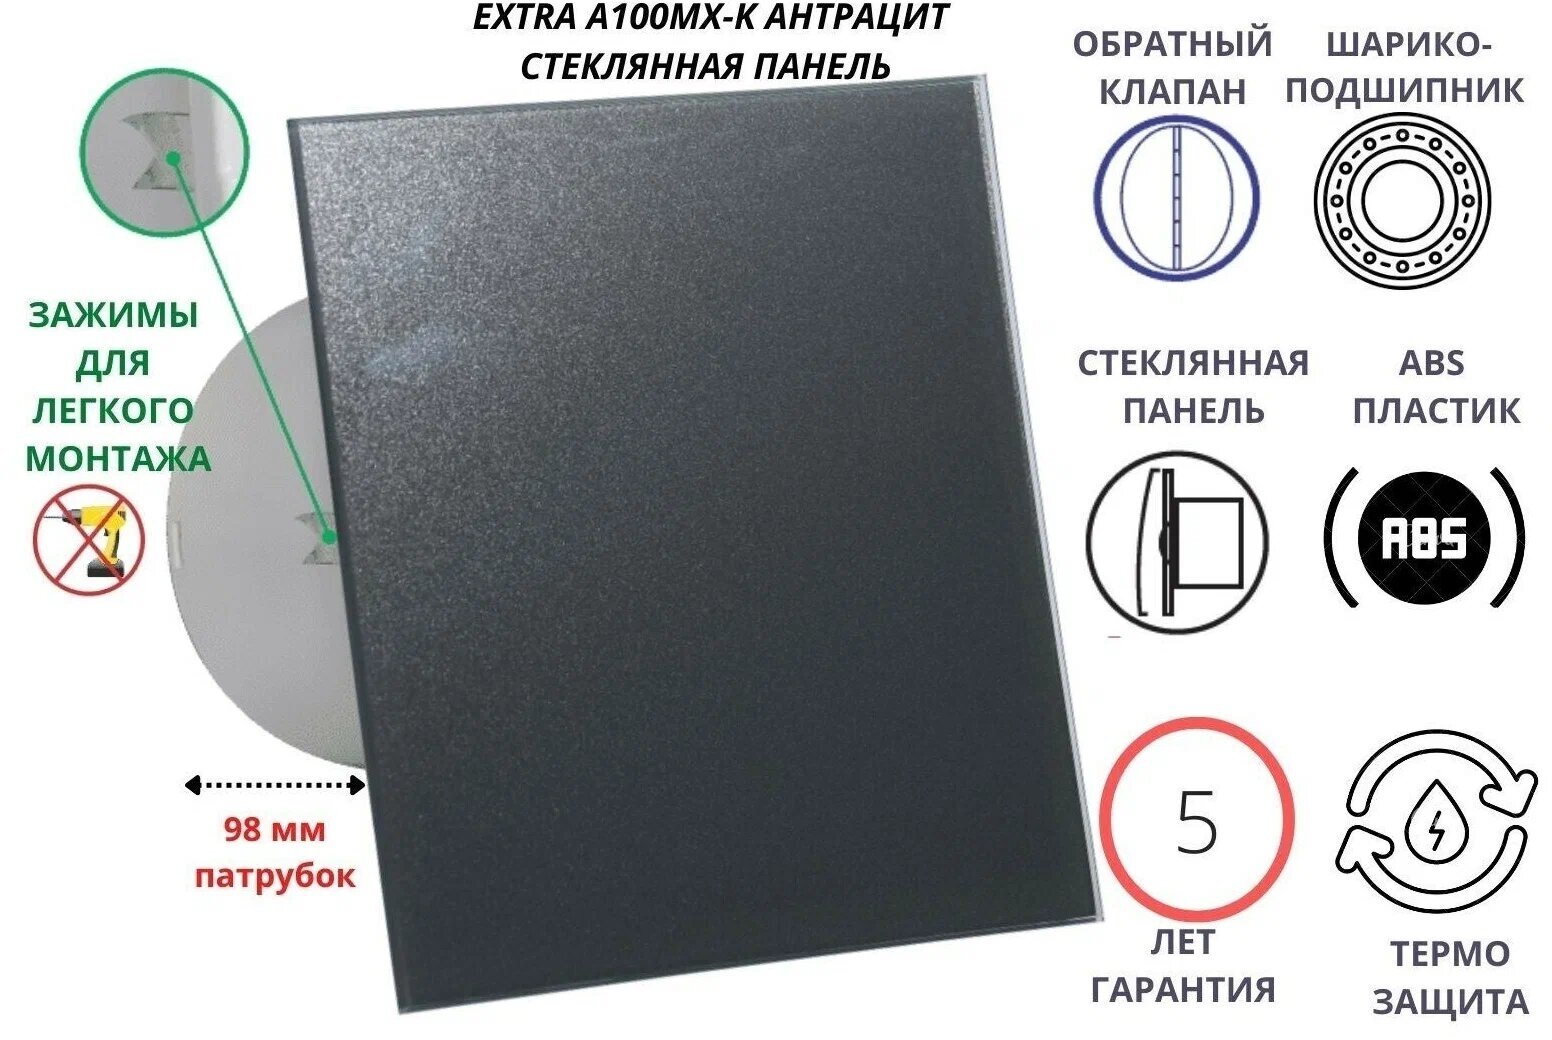 Вентилятор D100мм со стеклянной панелью цвета антрацит, с обратным клапаном и креплением без сверления A100МX-K, Сербия - фотография № 1